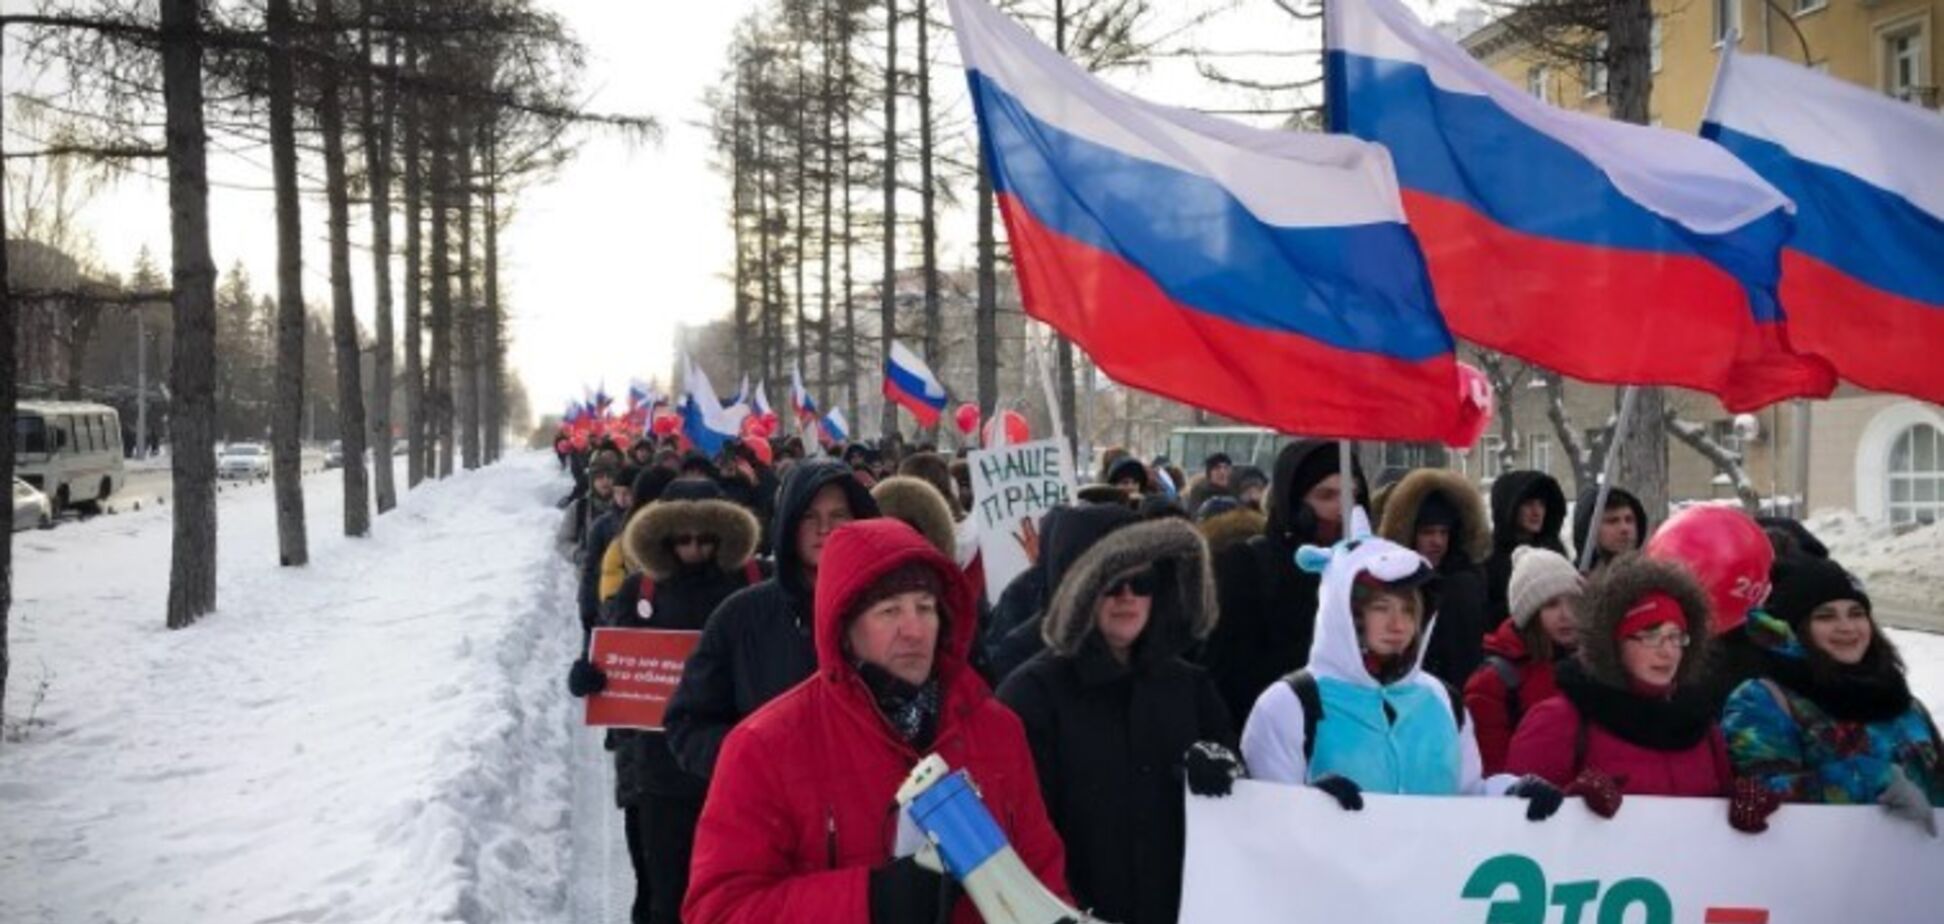 'Я не буду плакать': известный пропагандист Путина пострадал на митинге в Москве